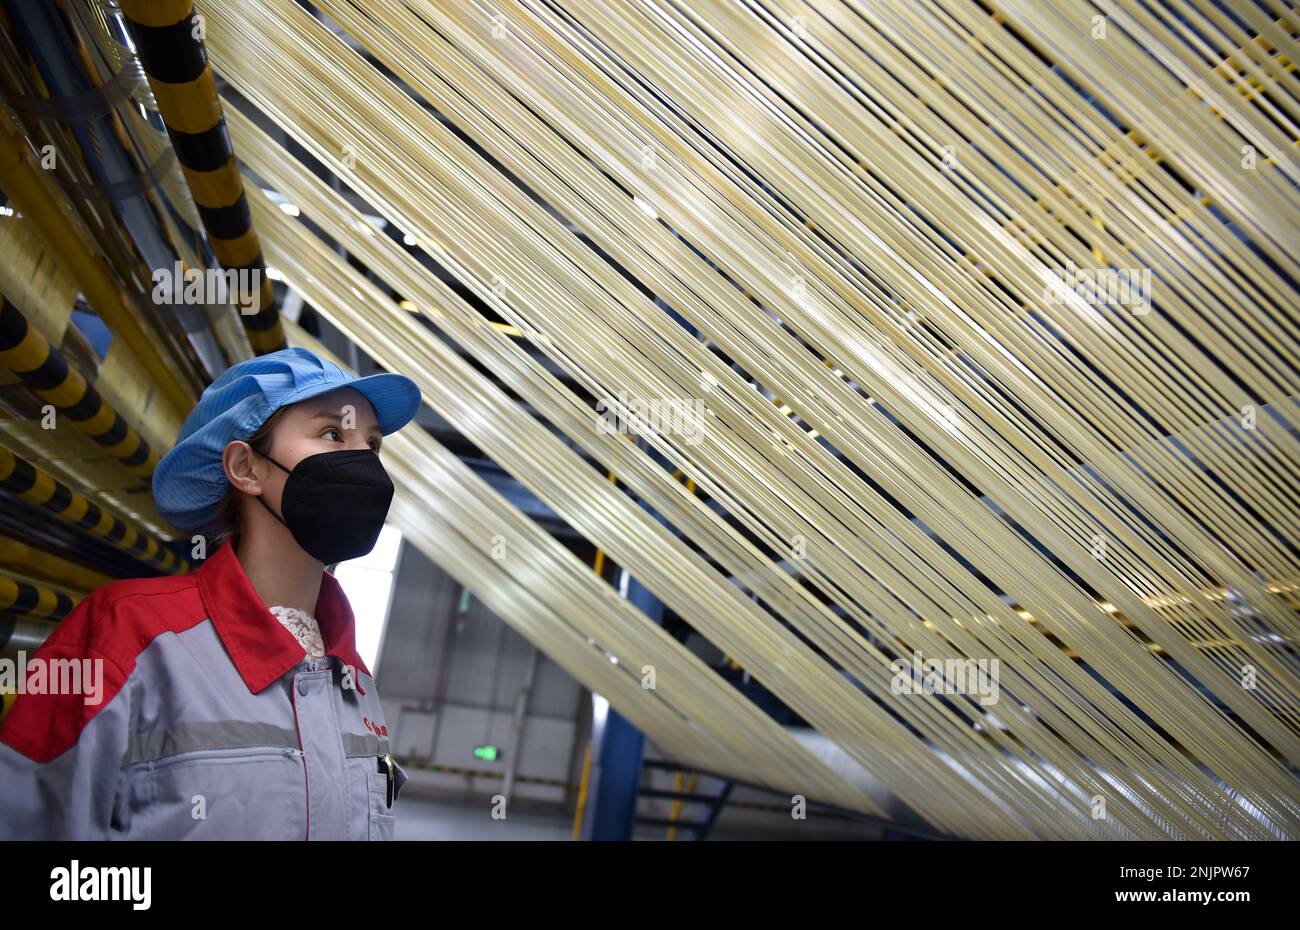 Xining, la provincia cinese di Qinghai. 22nd Feb, 2023. Un membro dello staff controlla i filamenti grezzi presso la base di produzione di Zhongfu Shenying Carbon Fiber Co., Ltd. A Xining, provincia Qinghai della Cina nord-occidentale, 22 febbraio 2023. Le linee di produzione dell'azienda sono in funzione 24 ore su 24 per soddisfare la domanda dei suoi clienti, e circa il 80% della capacità di produzione annuale dei suoi impianti di prima fase sono già stati prenotati finora. Credit: WU Gang/Xinhua/Alamy Live News Foto Stock